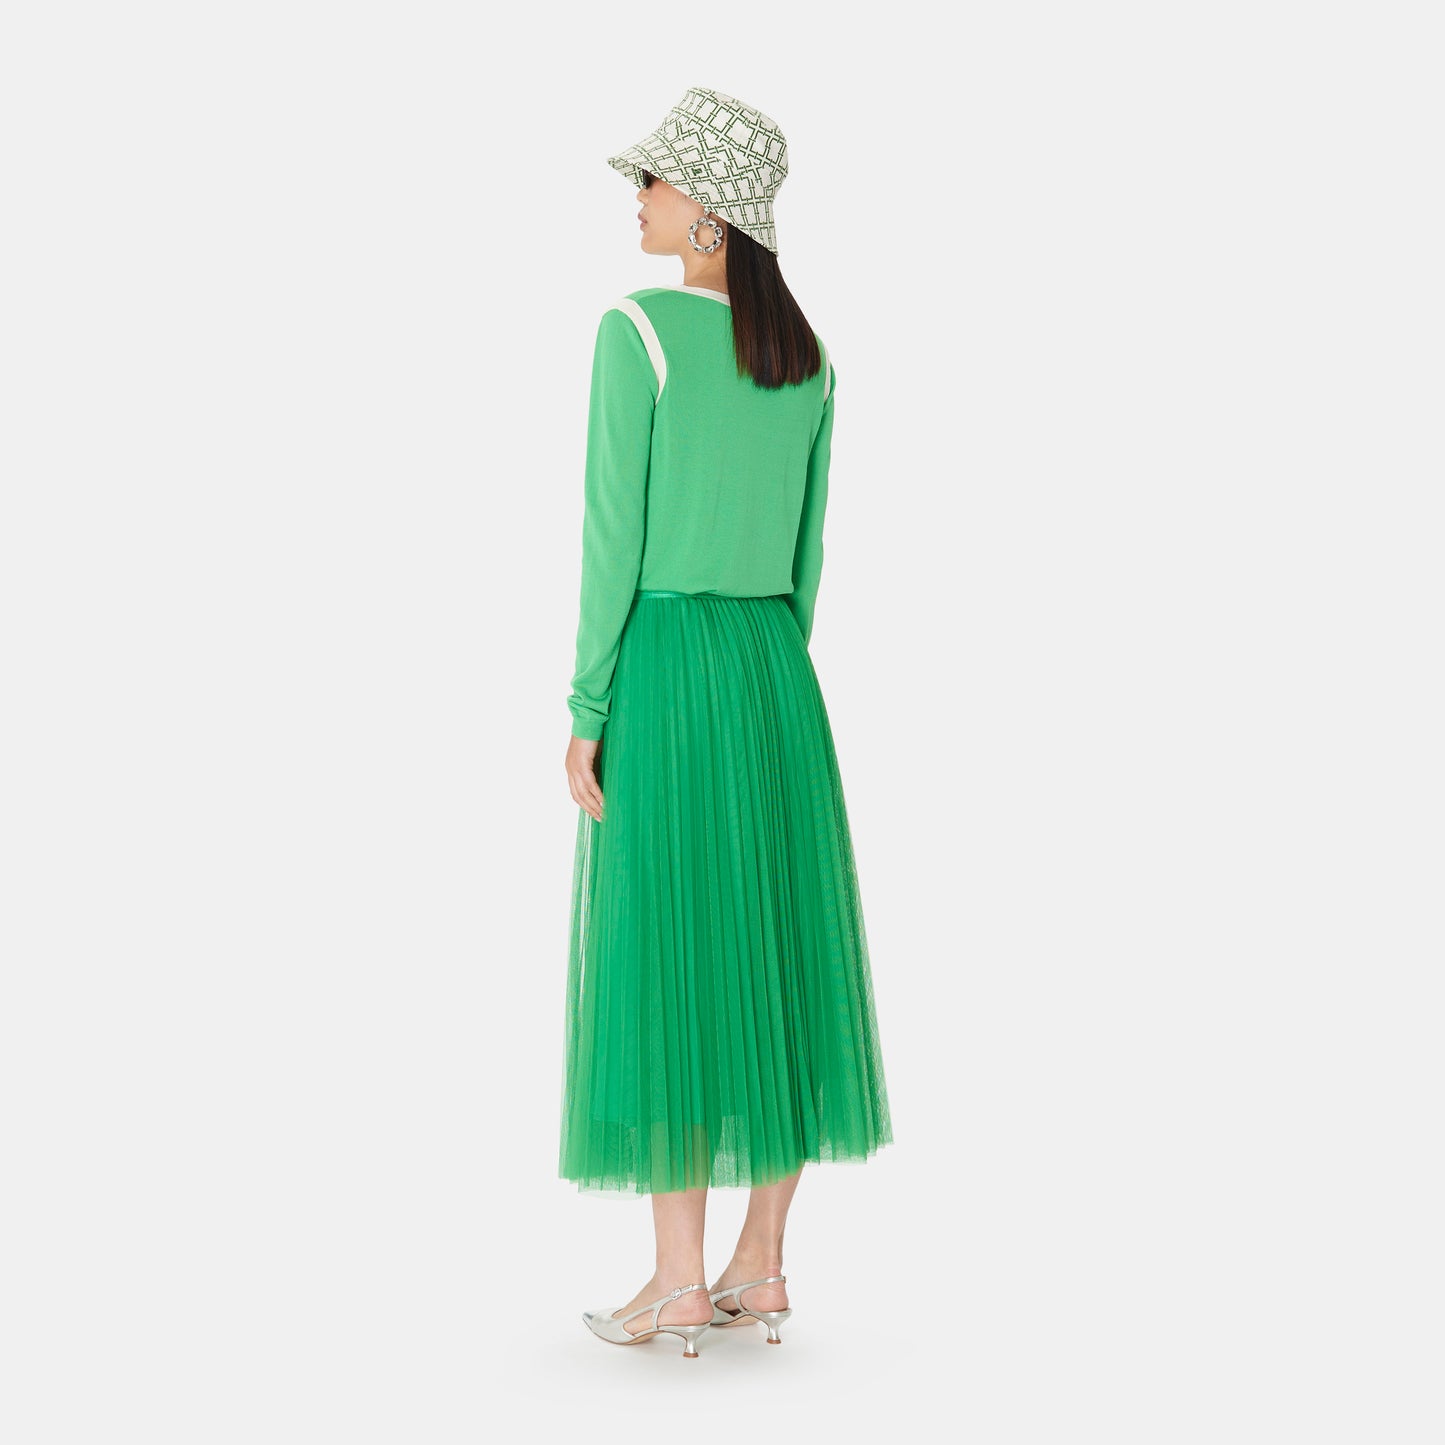 Green Midi Length Tulle Skirt